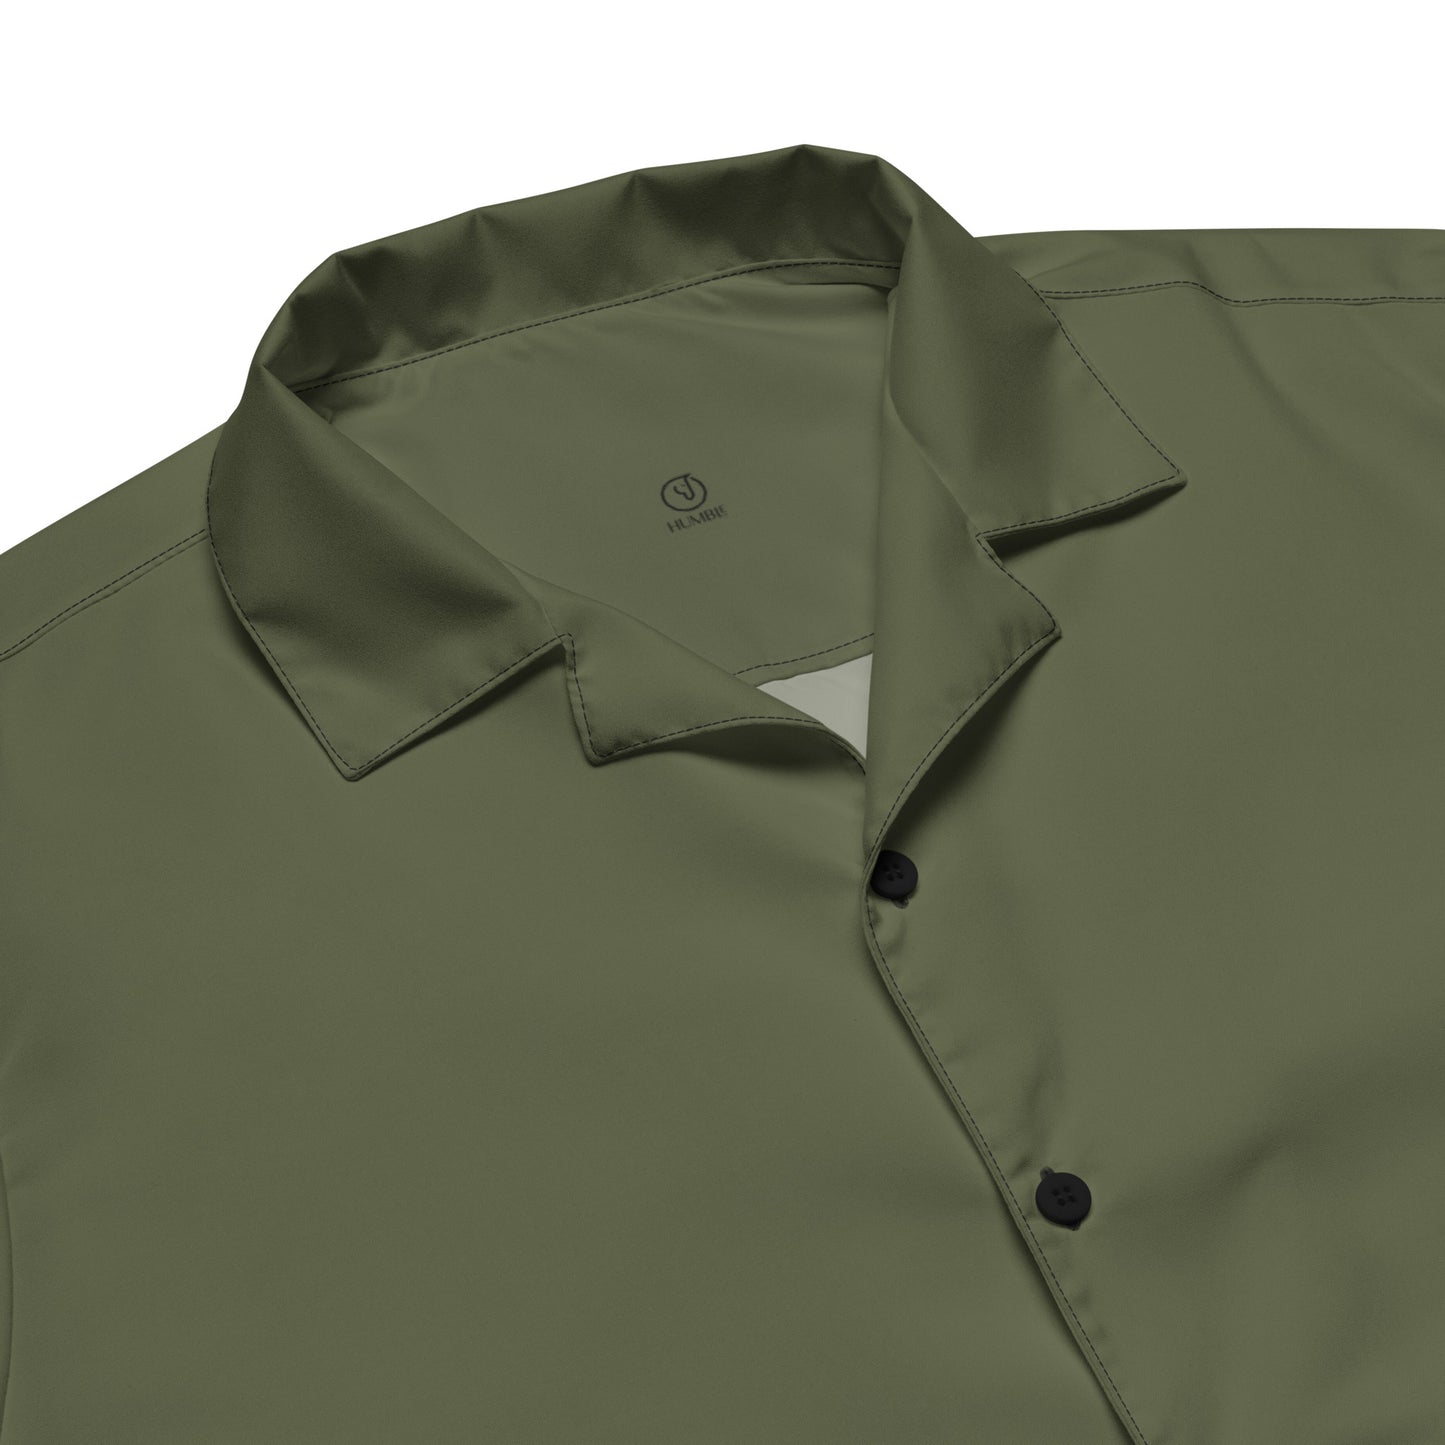 Humble Sportswear, men's Color Match green lightweight button shirt casual